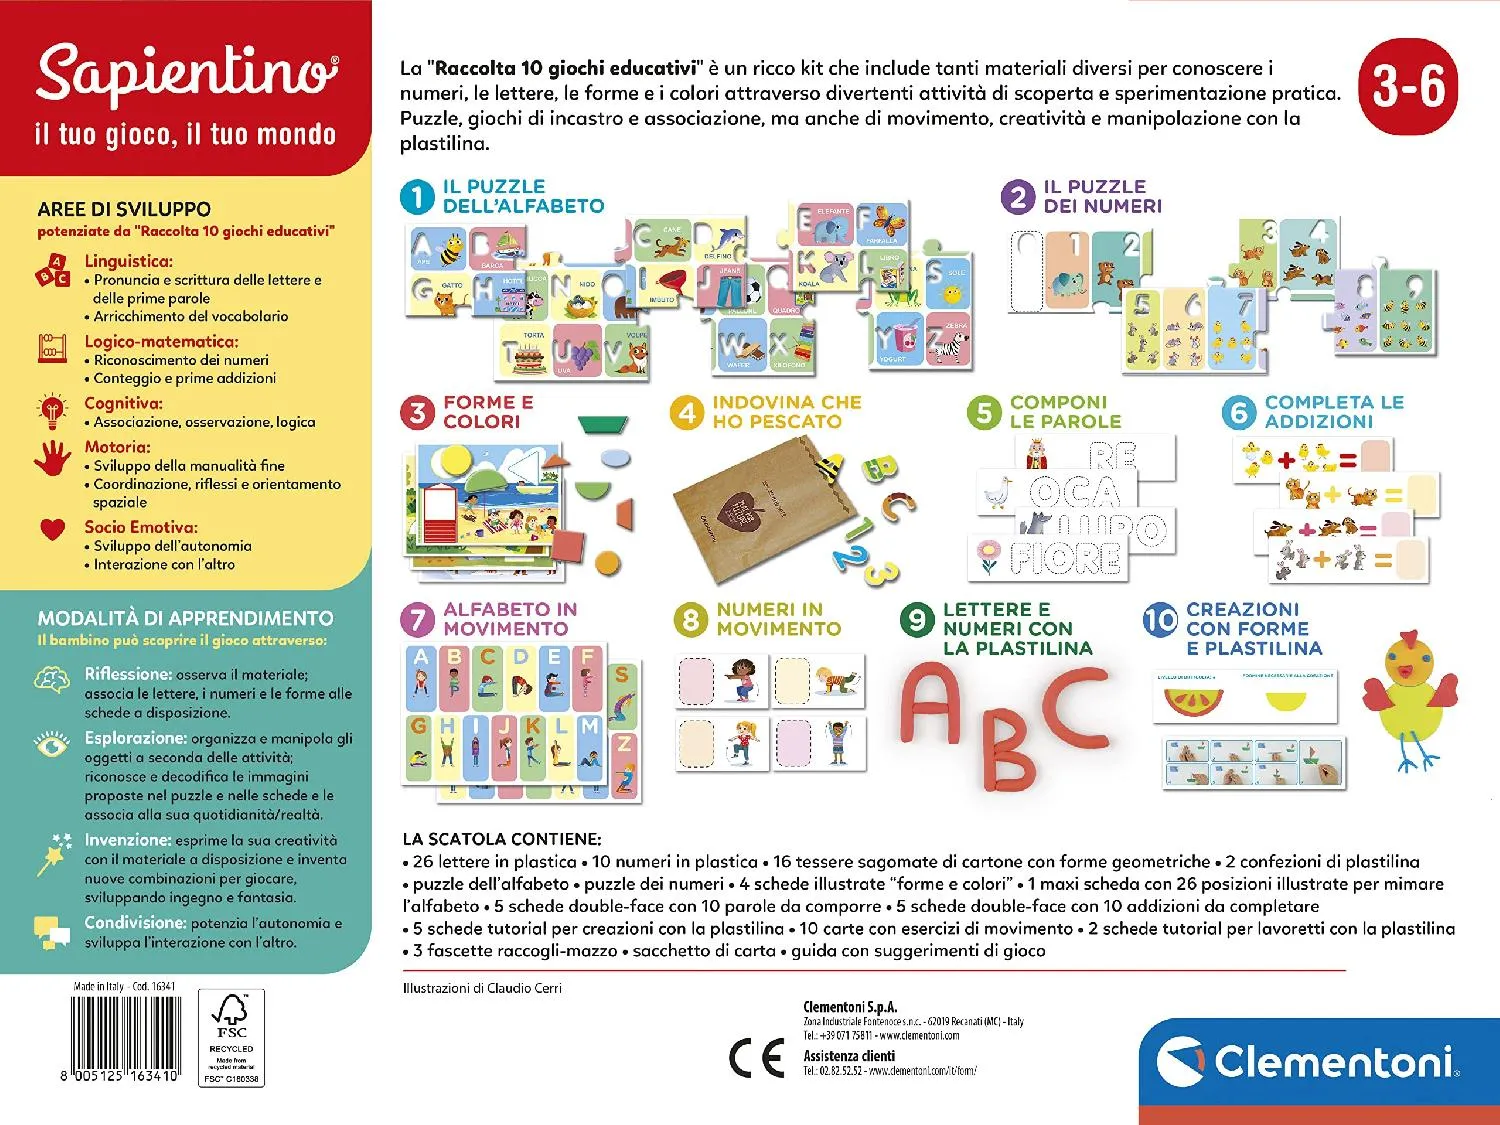 Clementoni Sapientino Raccolta 10 Giochi Educativi per Imparare Alfabeto,  Numeri, Forme e Colori Gioco Educativo Giocattolo per Bambini da 3+ Anni -  16341